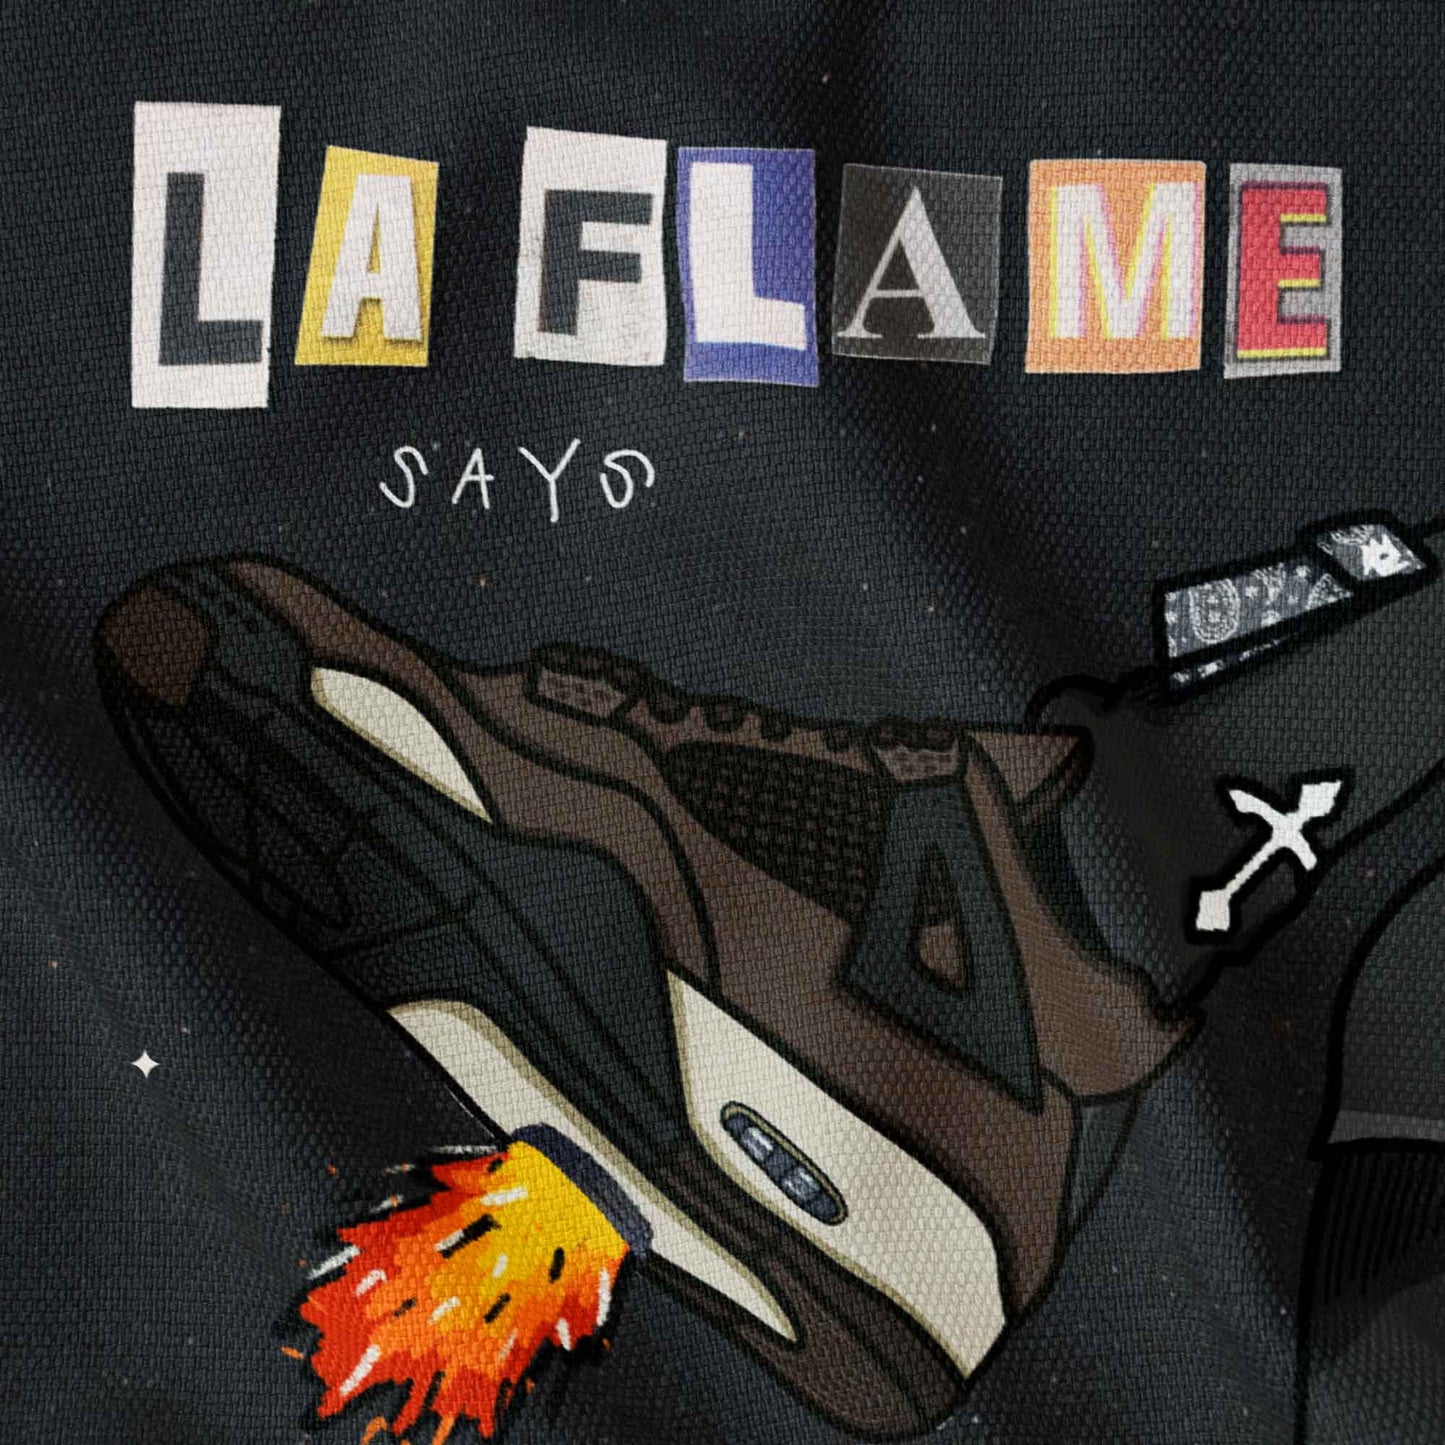 La Flame says